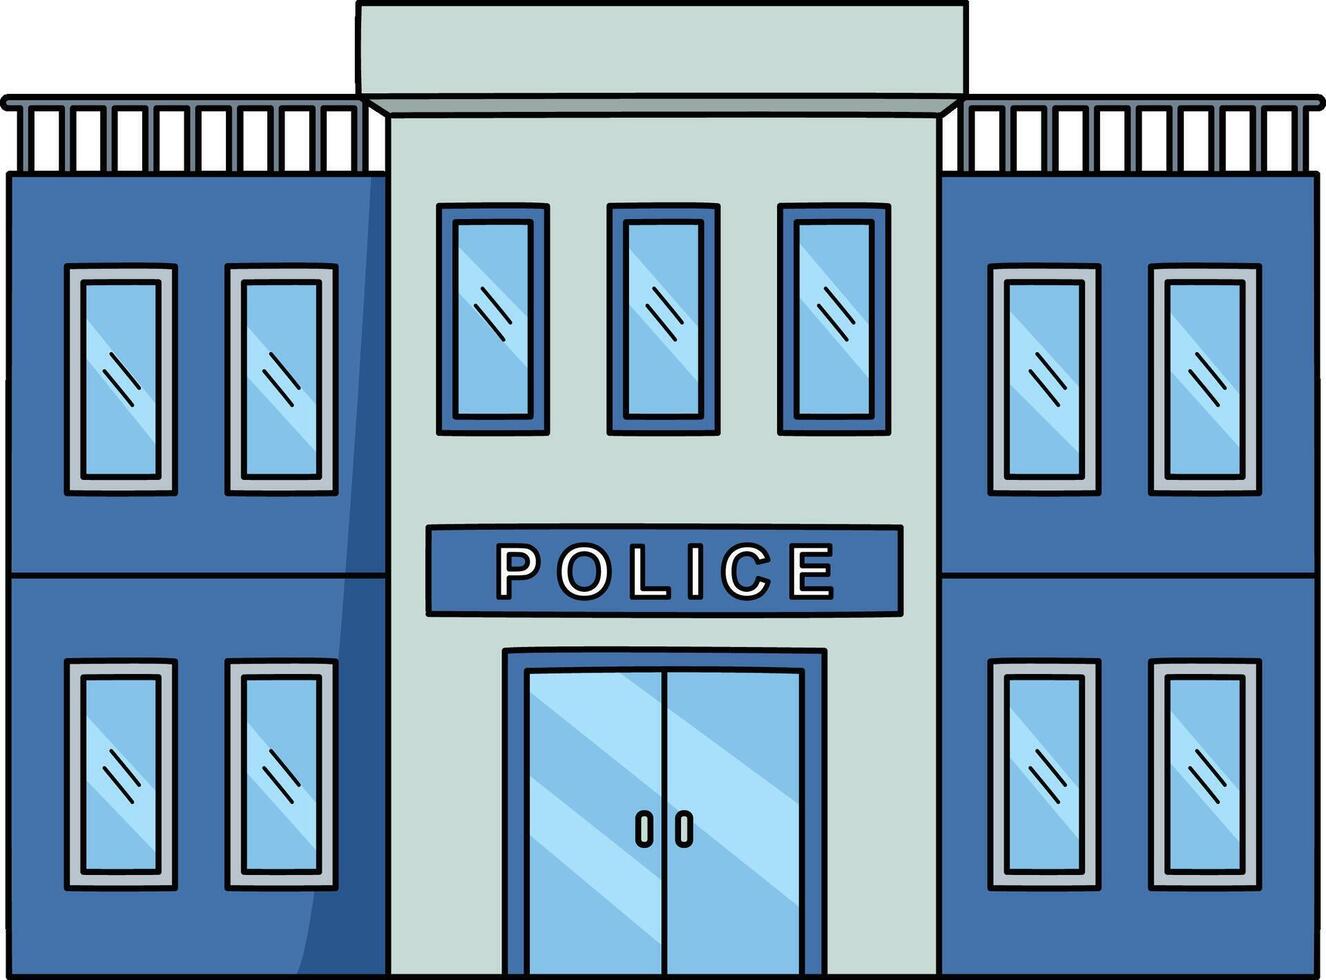 police station dessin animé coloré clipart vecteur